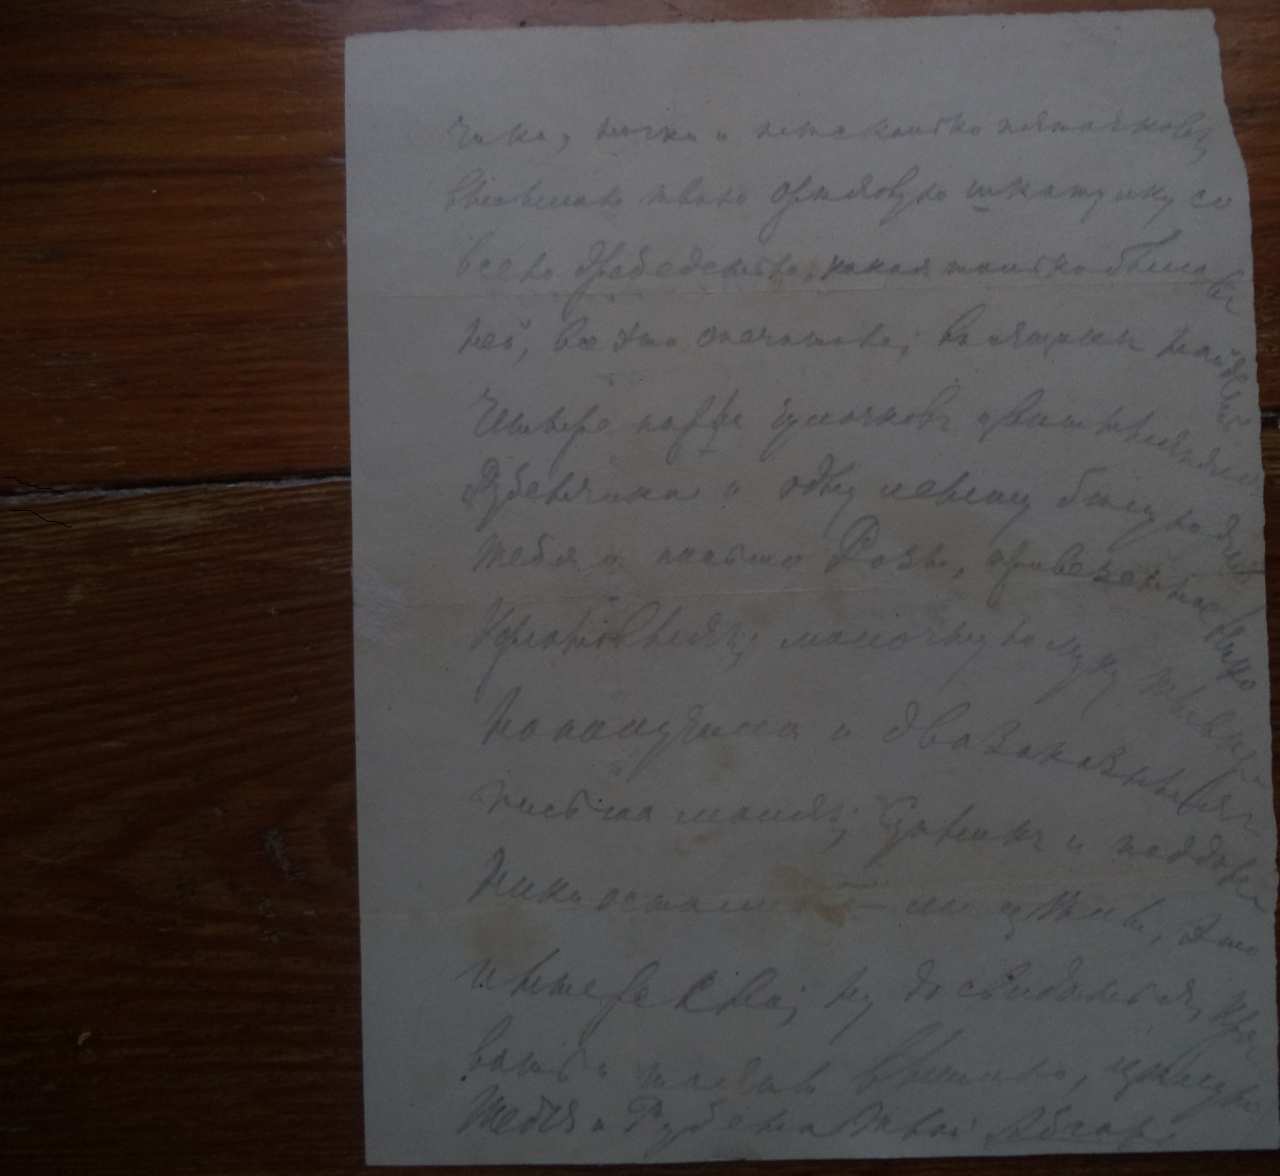 Նամակ՝ ուղղված Վարվառա Օրբելուն 